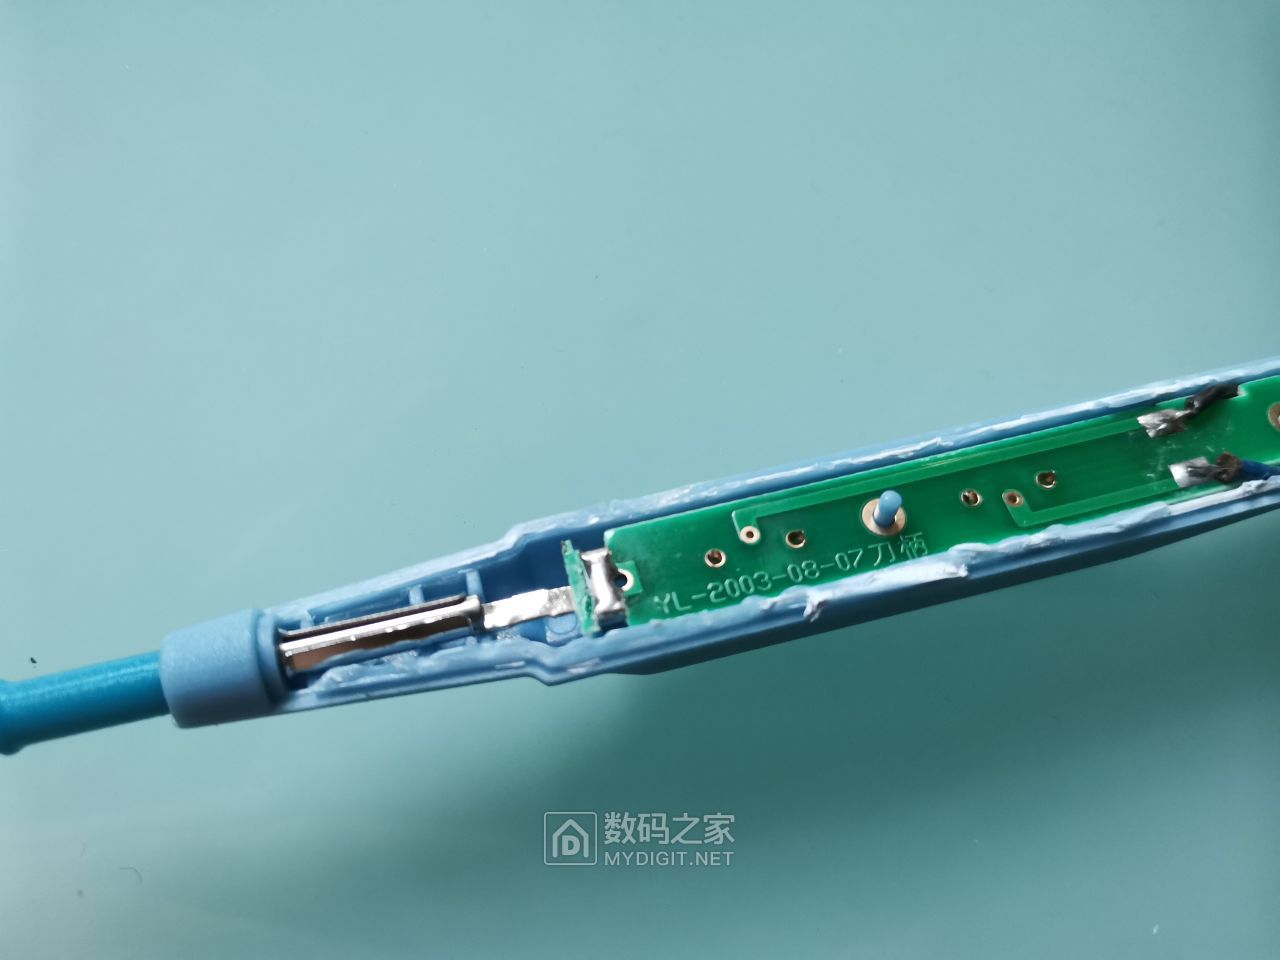 安徽英特BC-50D高频电刀_高频电刀_手术设备_来宝商城